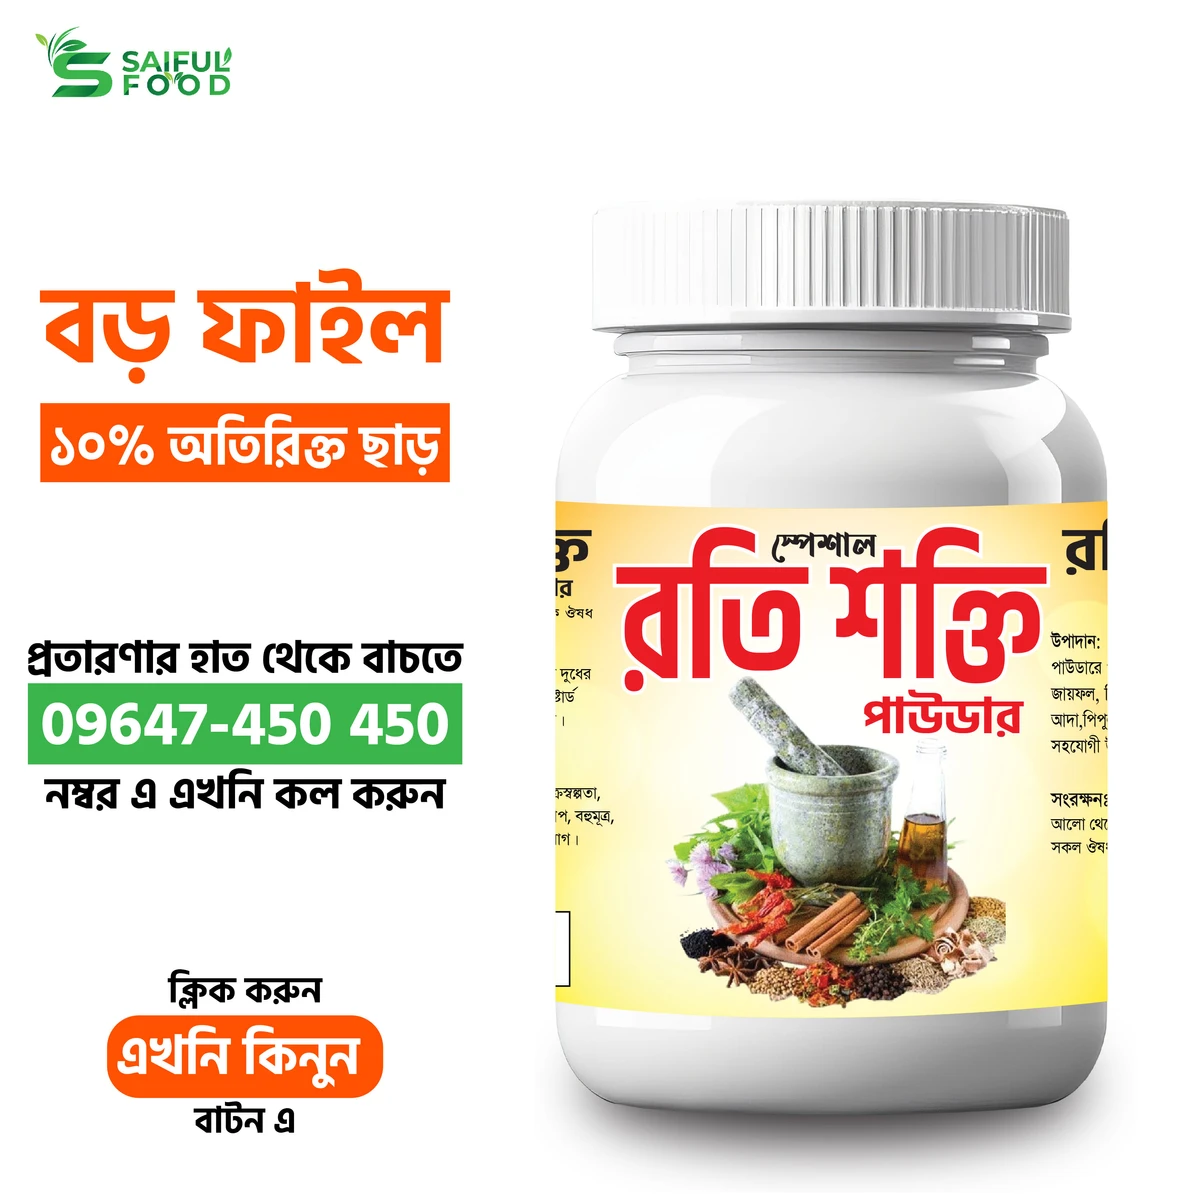 স্পেশাল রতি শক্তি পাউডার || Special Roti Shakti Powder || Organic Powder for Erectile Disfunction